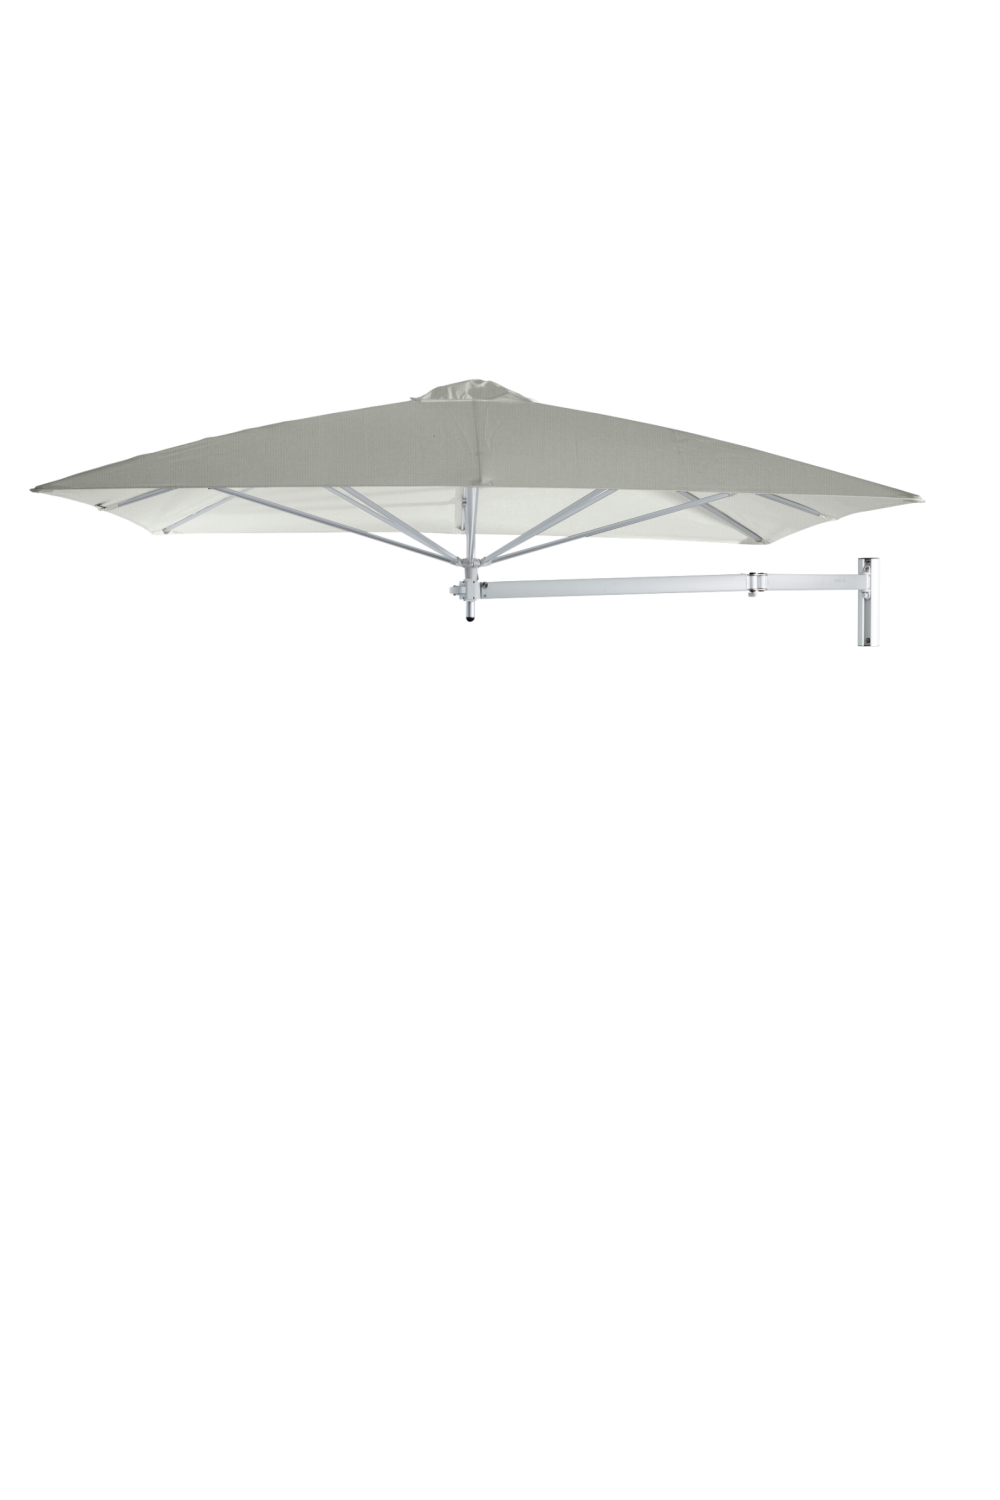 Square Outdoor Cantilever Wall Umbrella (7’ 6.6”) | Umbrosa Paraflex | Oroa.com